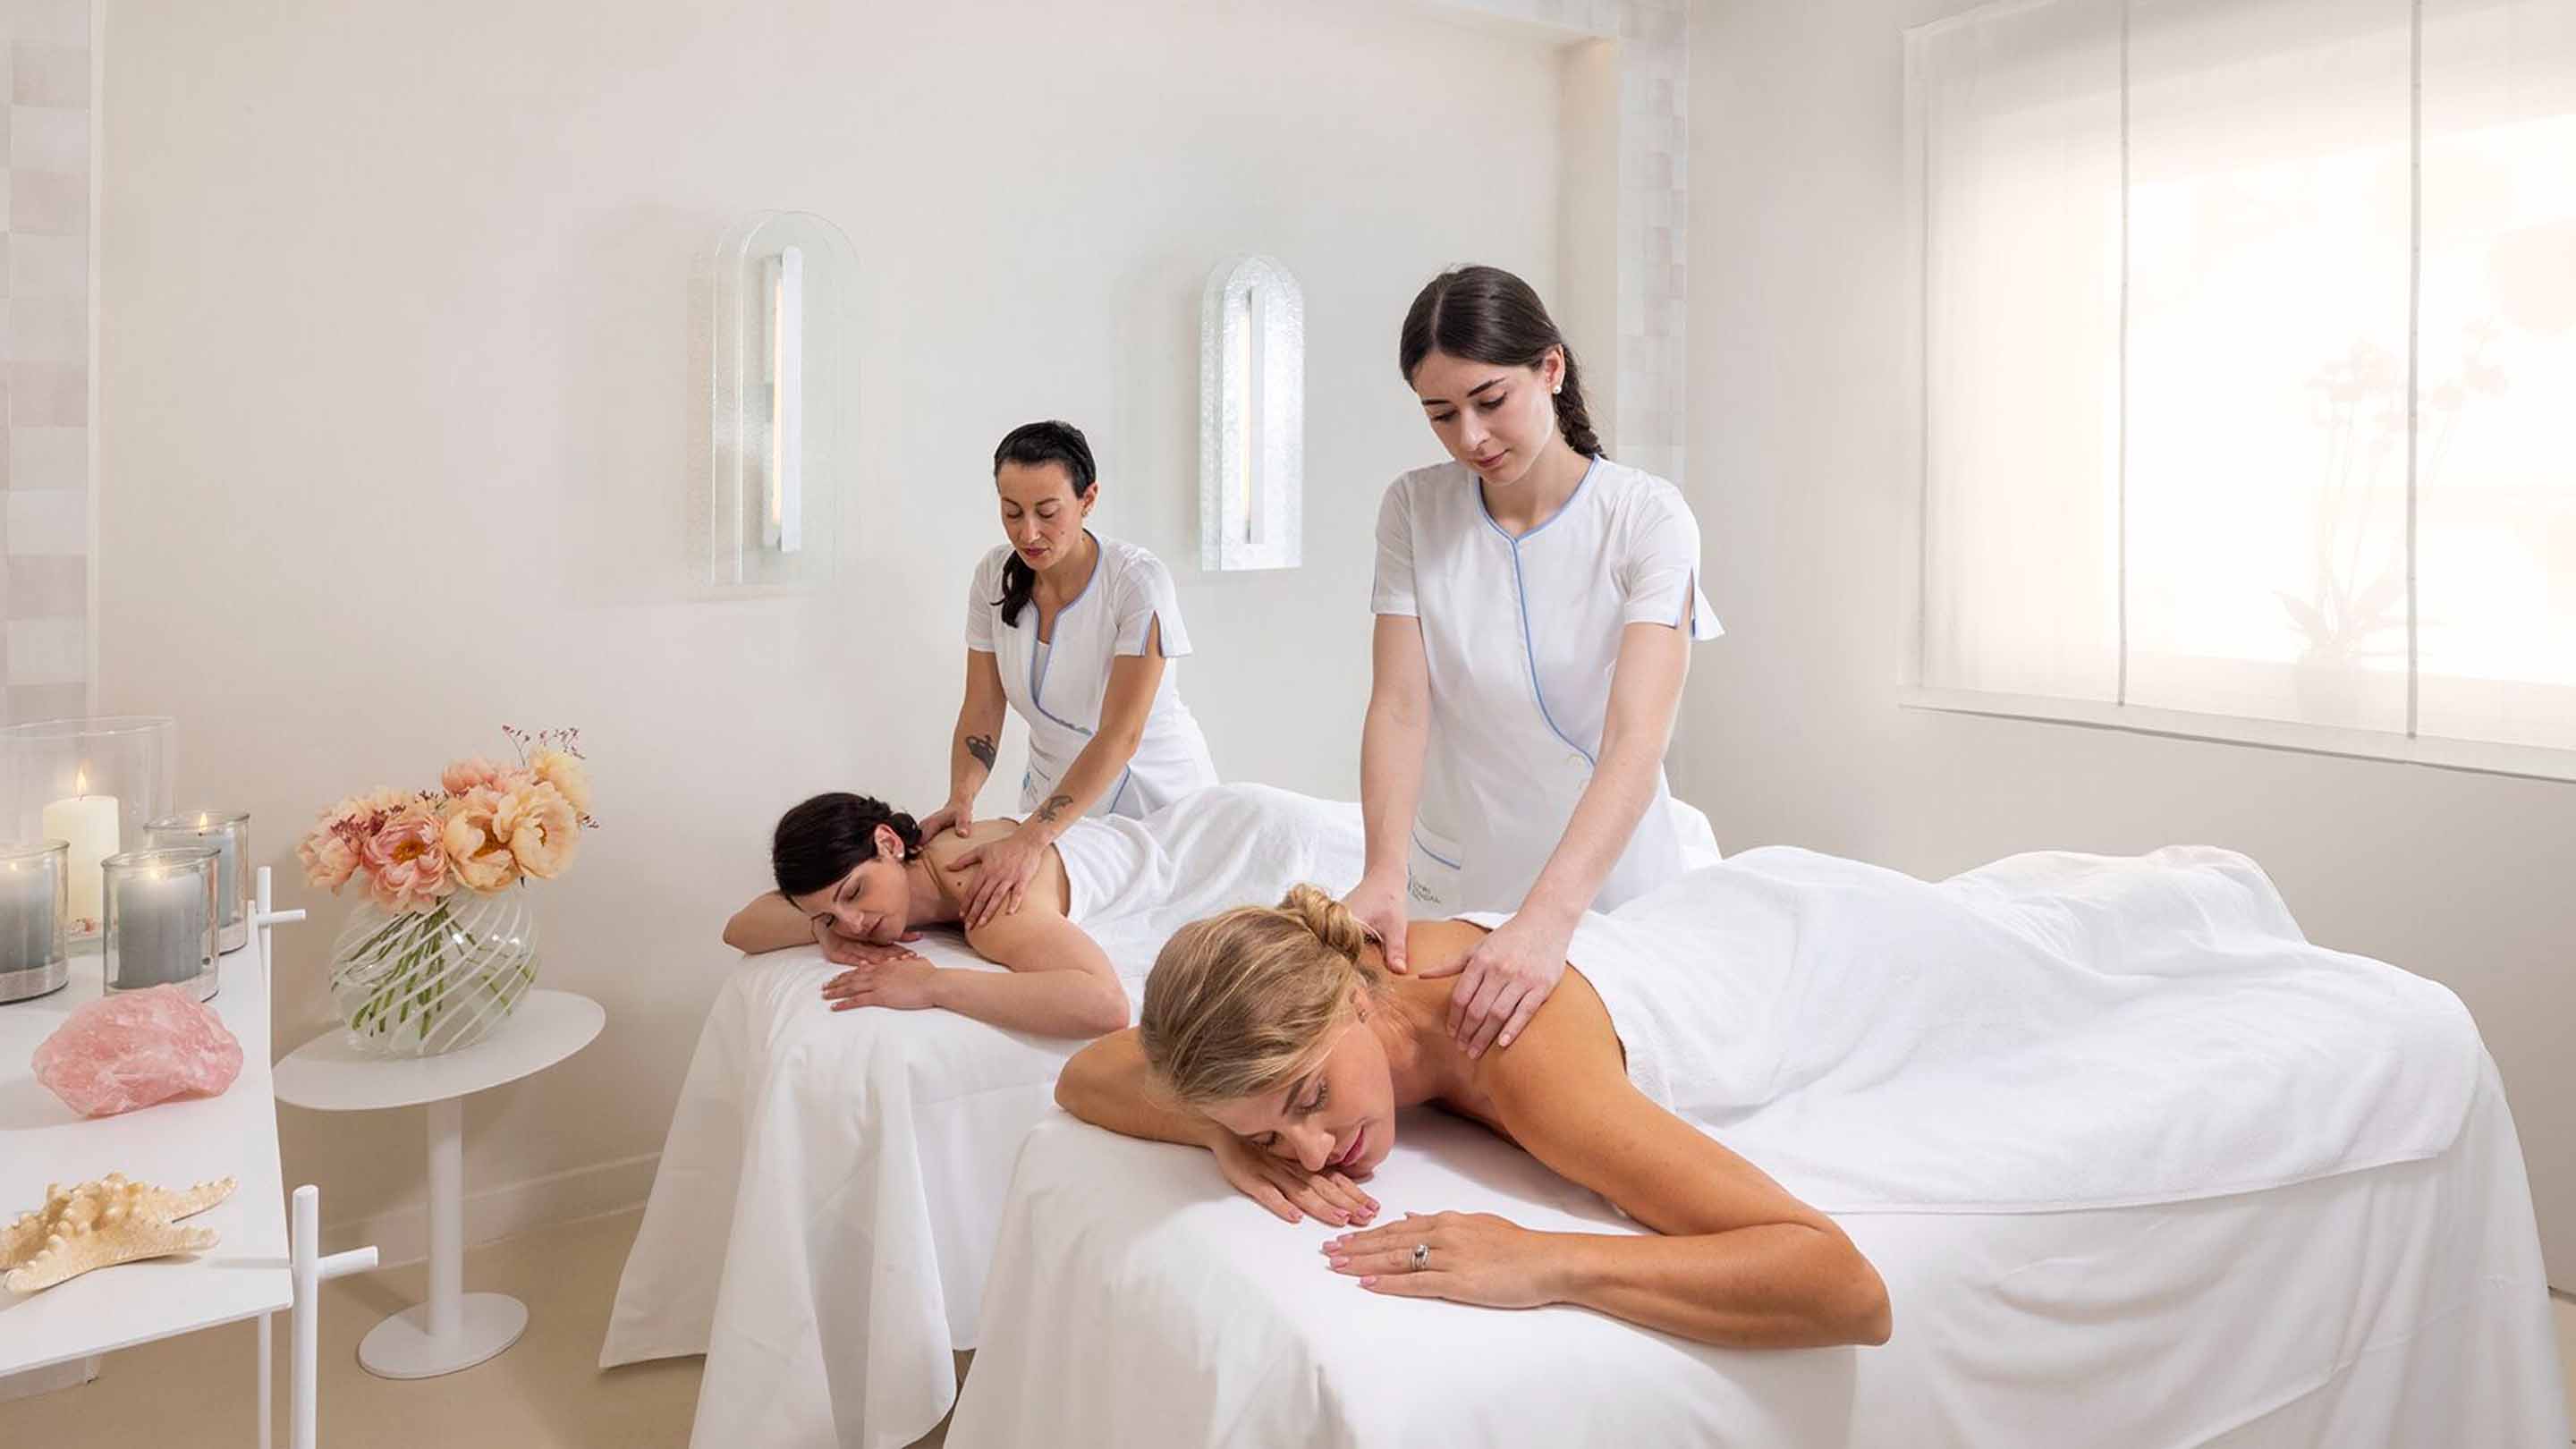 A couple's massage at the spa at Capri Palace Jumeirah